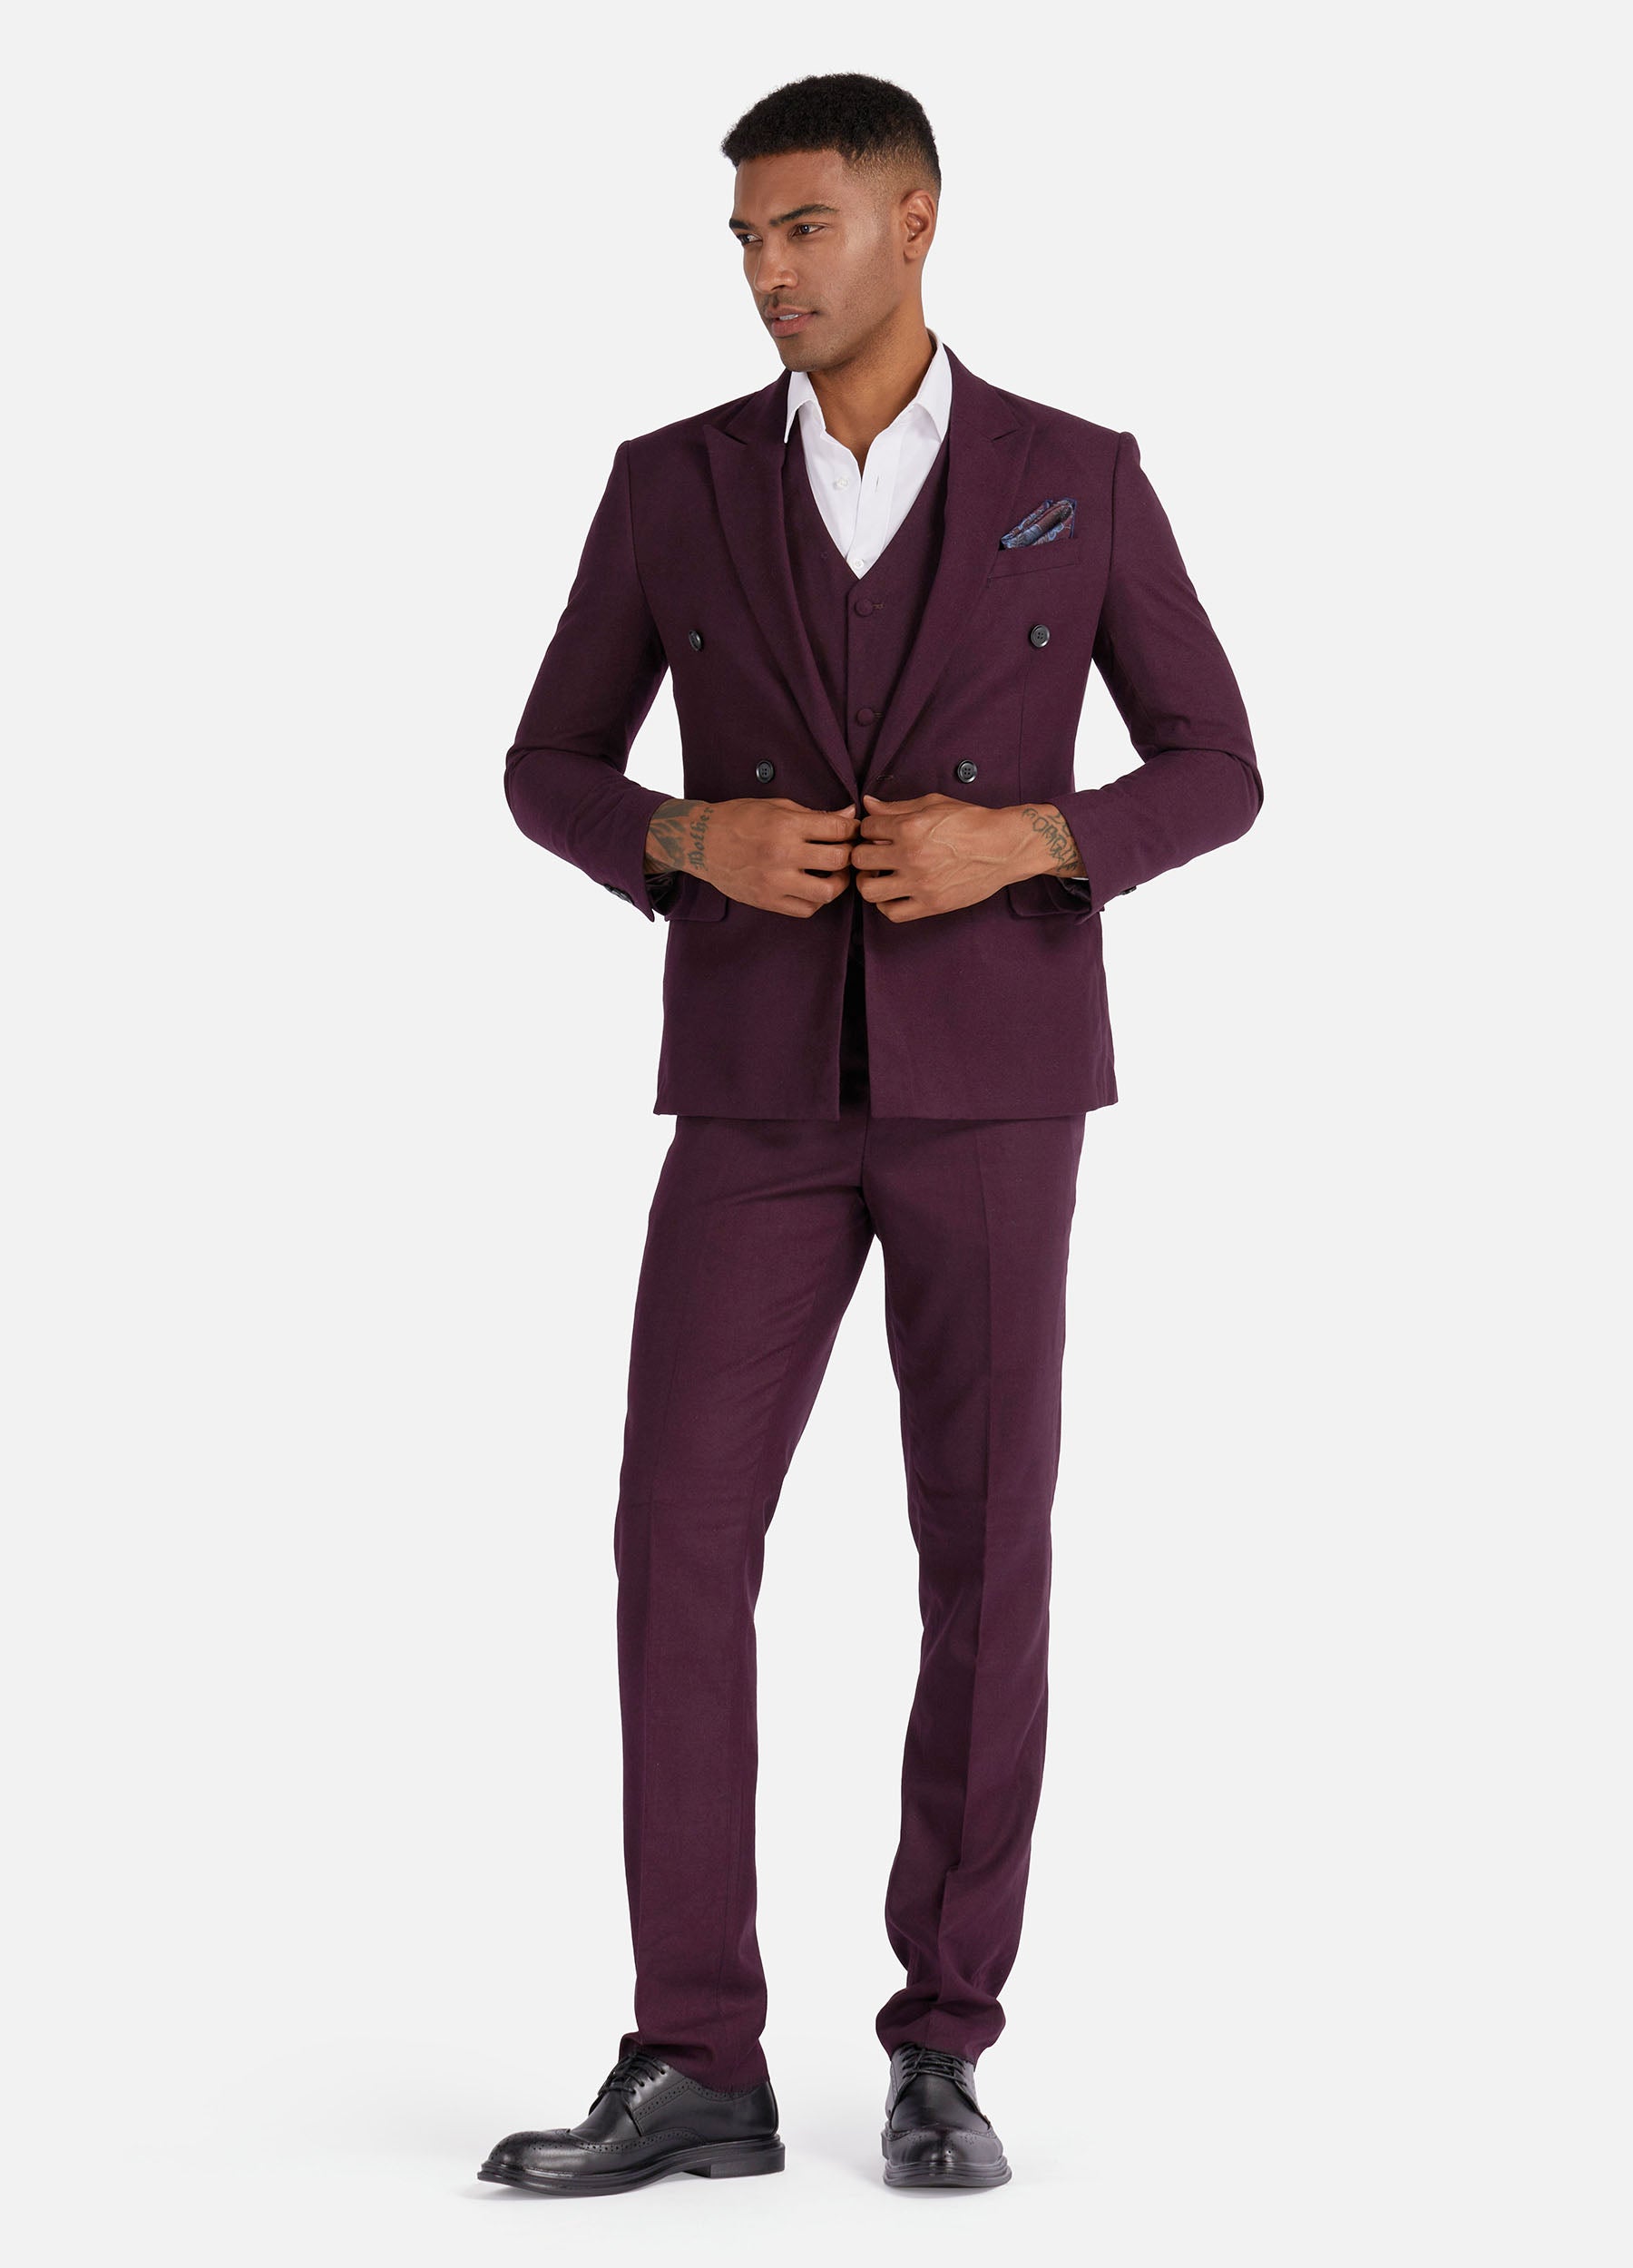 1PA1 Men's 3 Pieces Slim Fit Vested Suit, Wedding Tuxedo - Two Buttons Jacket, Vest & Pants